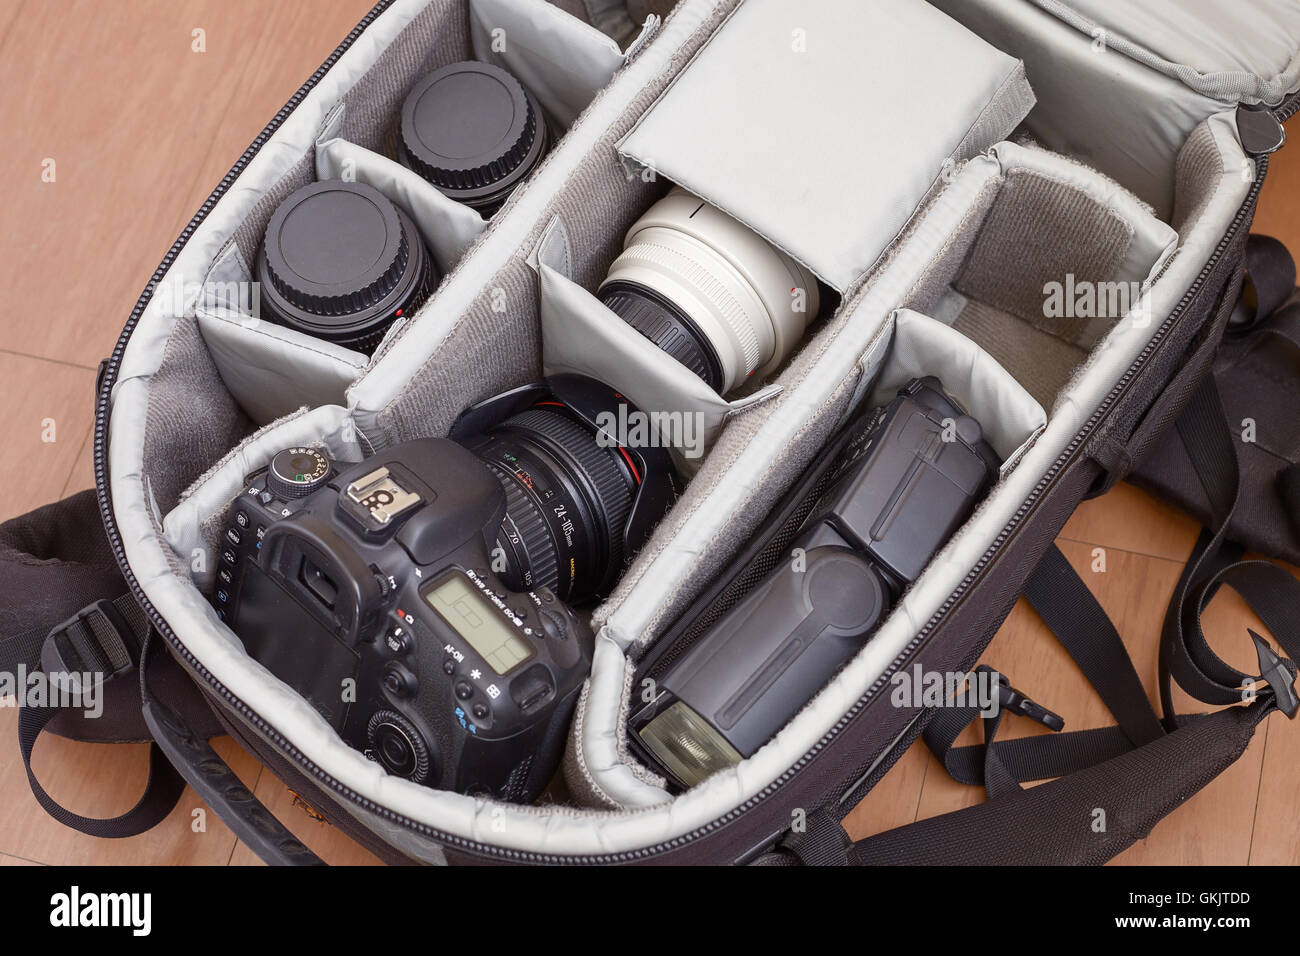 Equipamiento fotográfico profesional en mochila protectora Foto de stock